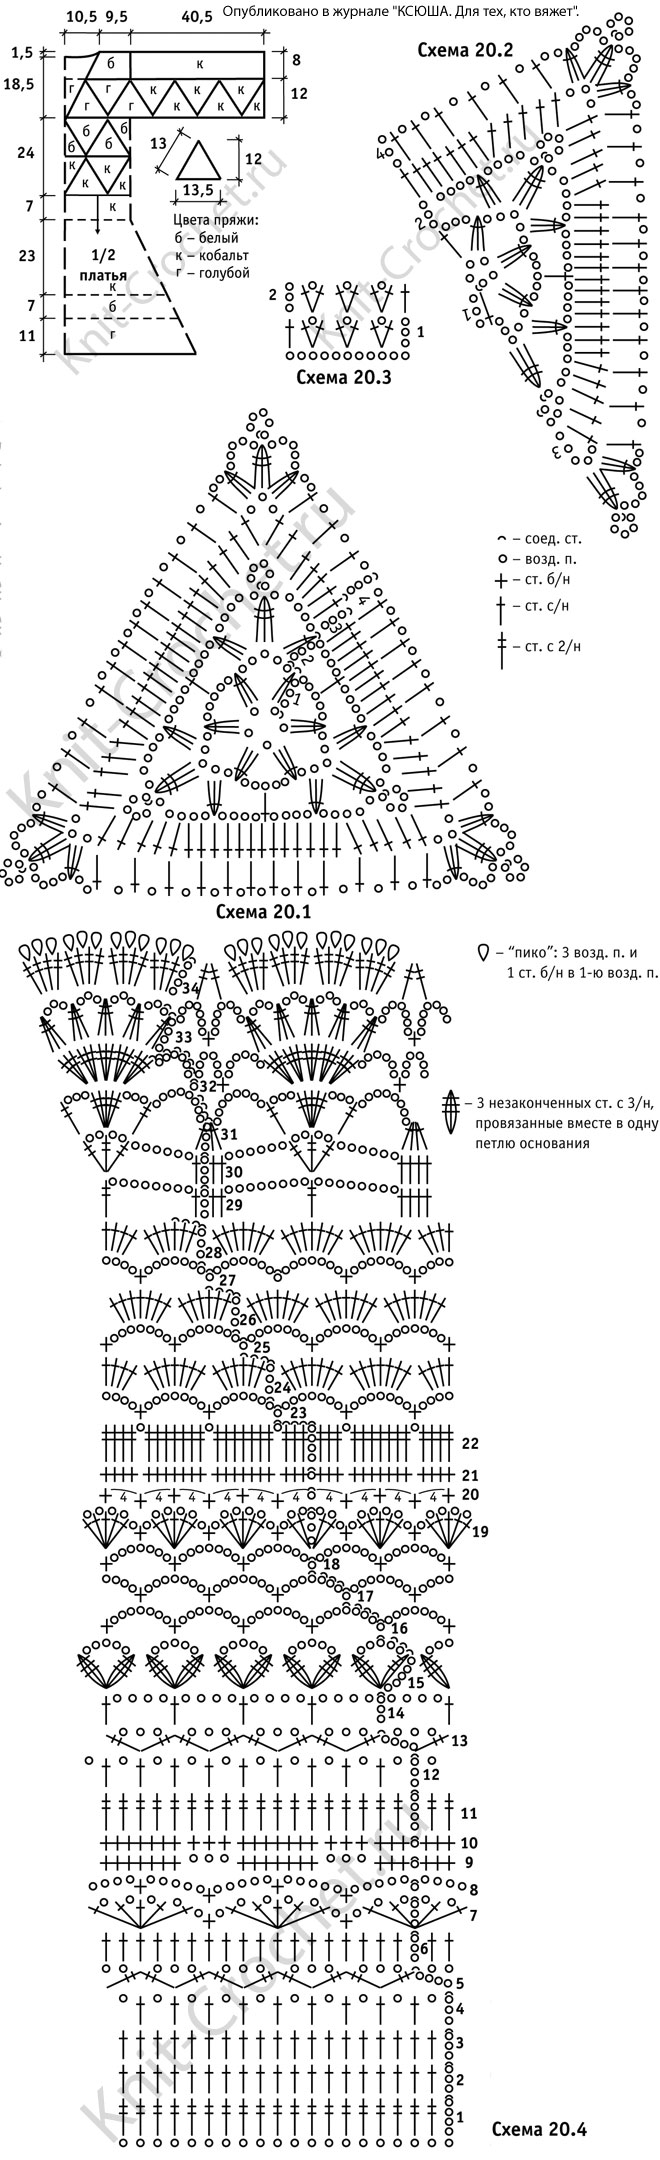 Выкройка, схемы узоров с описанием вязания крючком женского комбинированное платья размера 46-48.